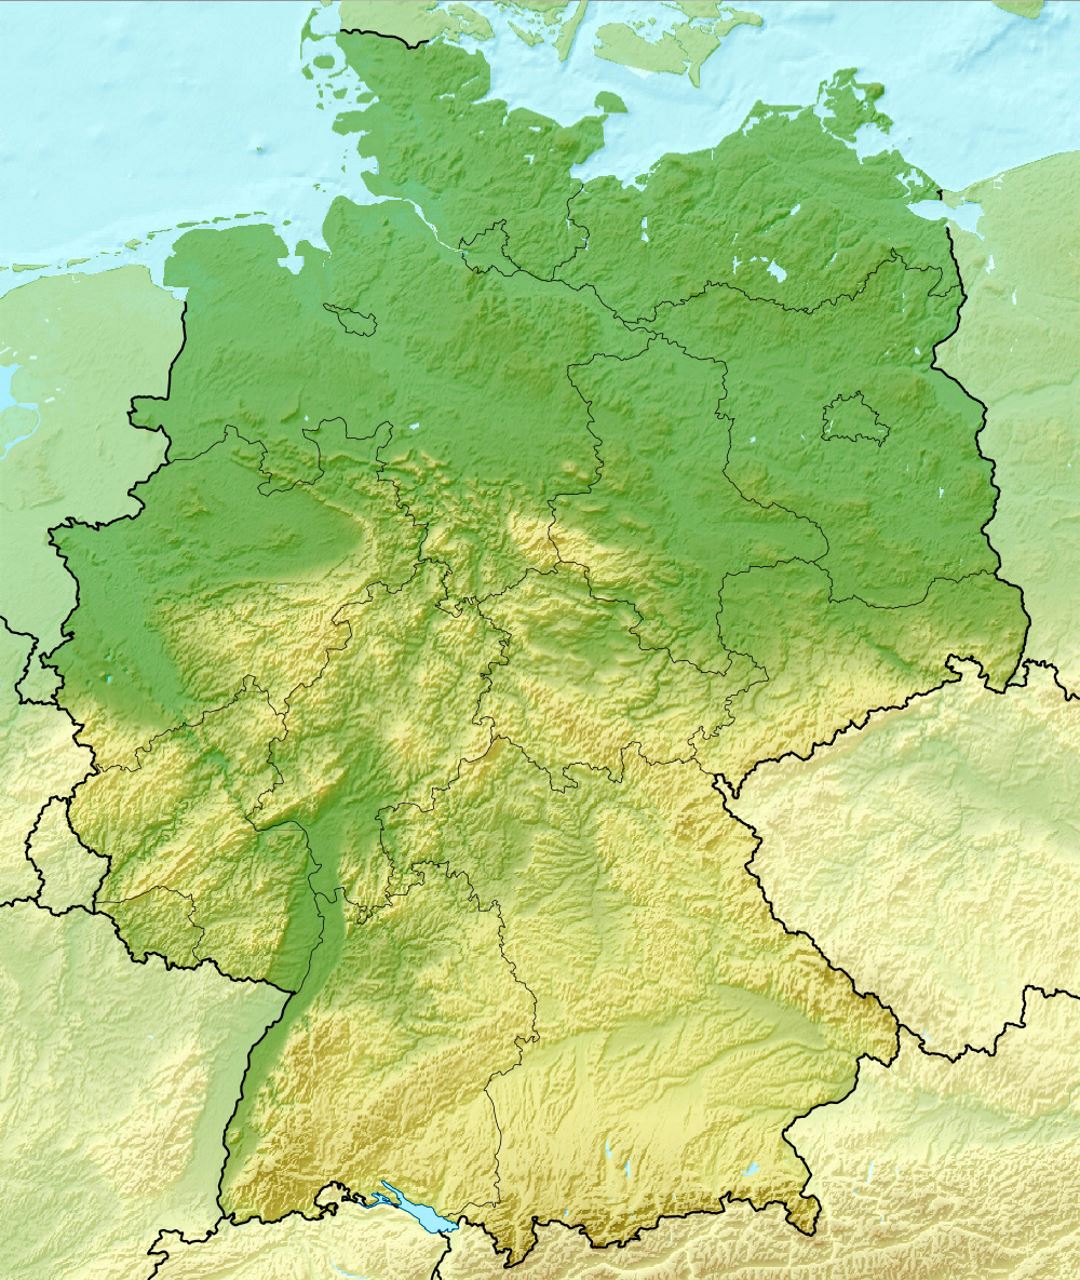 Mapa en relieve detallada de Alemania